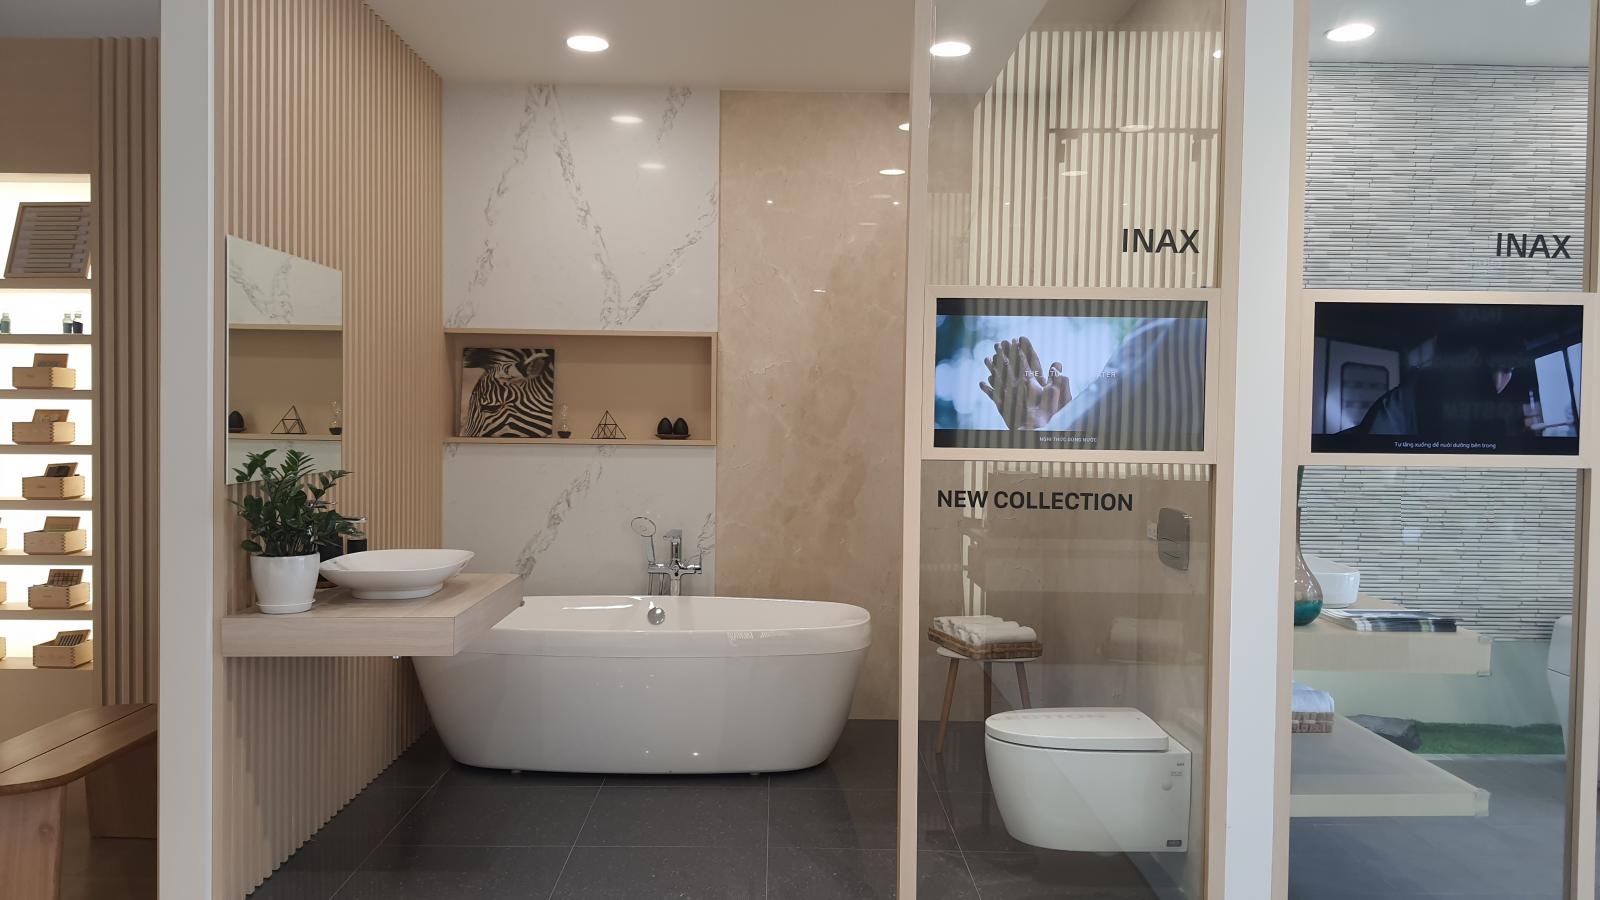 Top 50 bộ gương nhà tắm INAX hiện đại nhất: Hãy tham gia khám phá top 50 bộ gương nhà tắm Inax hiện đại nhất tại Inax ngay hôm nay! Với mức độ đa dạng và sự phát triển liên tục, bạn sẽ tìm thấy những sản phẩm gương phù hợp với gu thẩm mỹ của mình. Tất cả những sản phẩm bên cạnh đèn LED sáng tạo và tính năng thông minh, mang đến cho bạn trải nghiệm vô cùng thú vị và đầy ấn tượng!